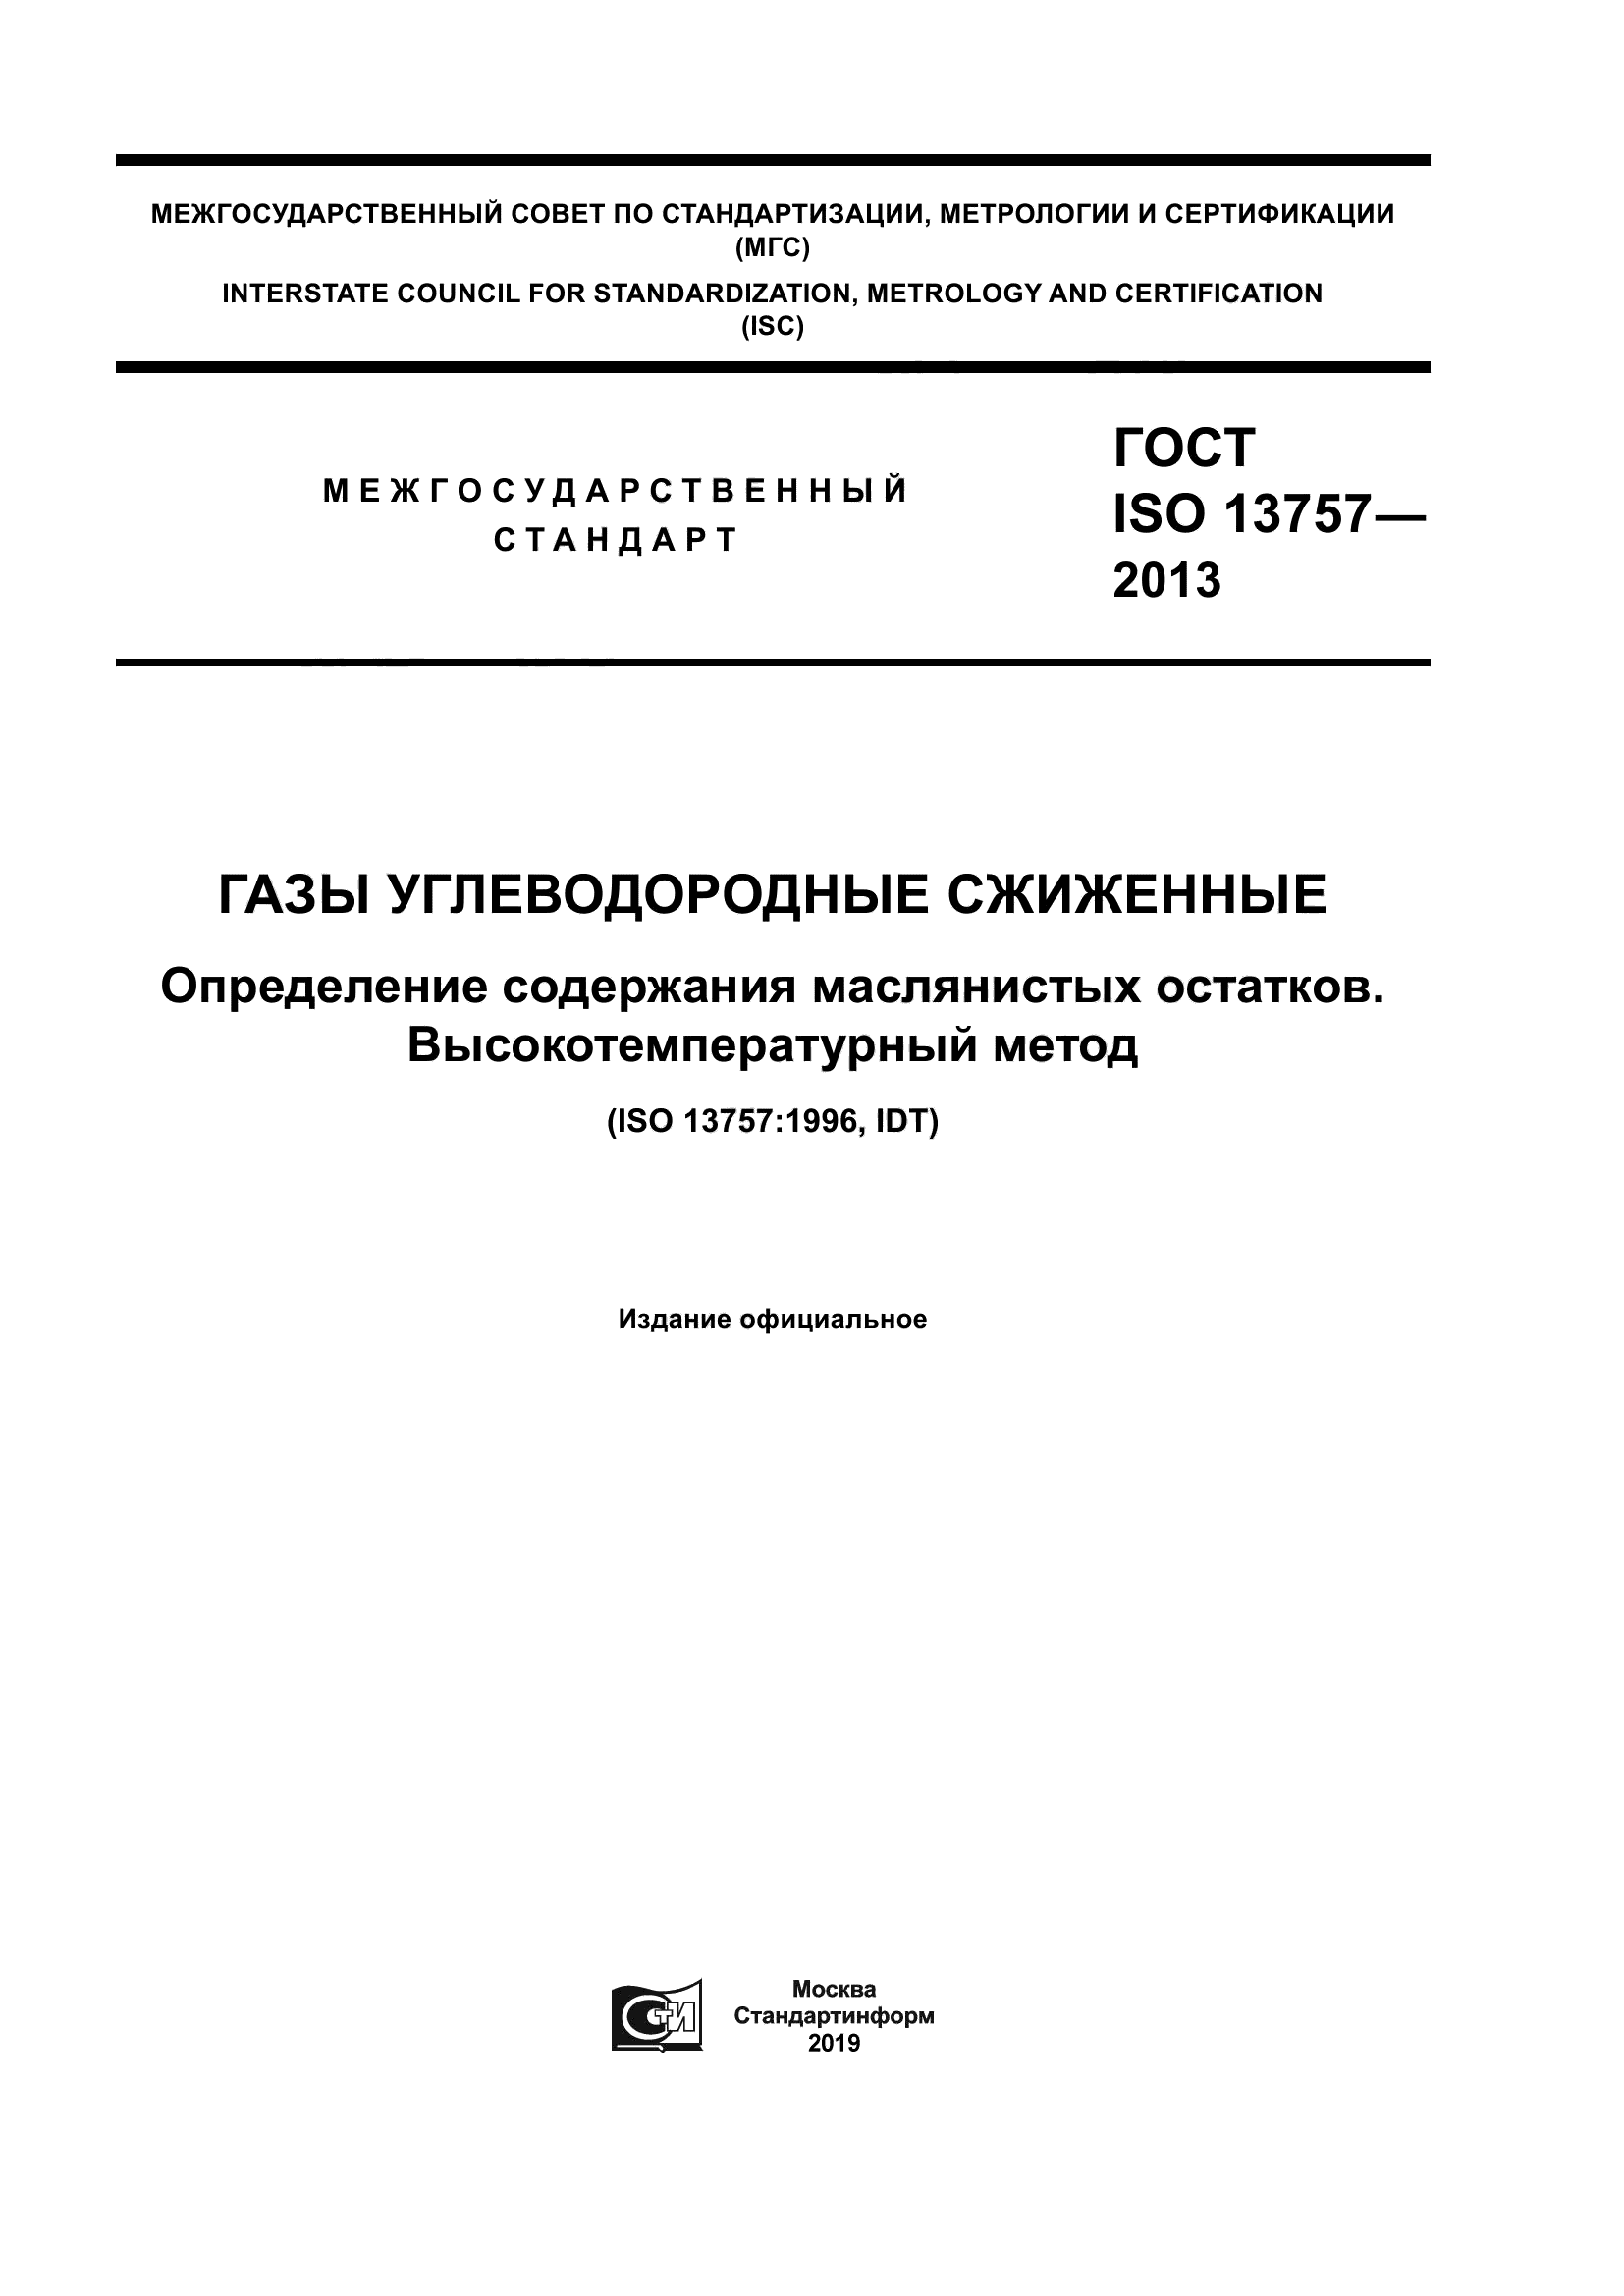 ГОСТ ISO 13757-2013